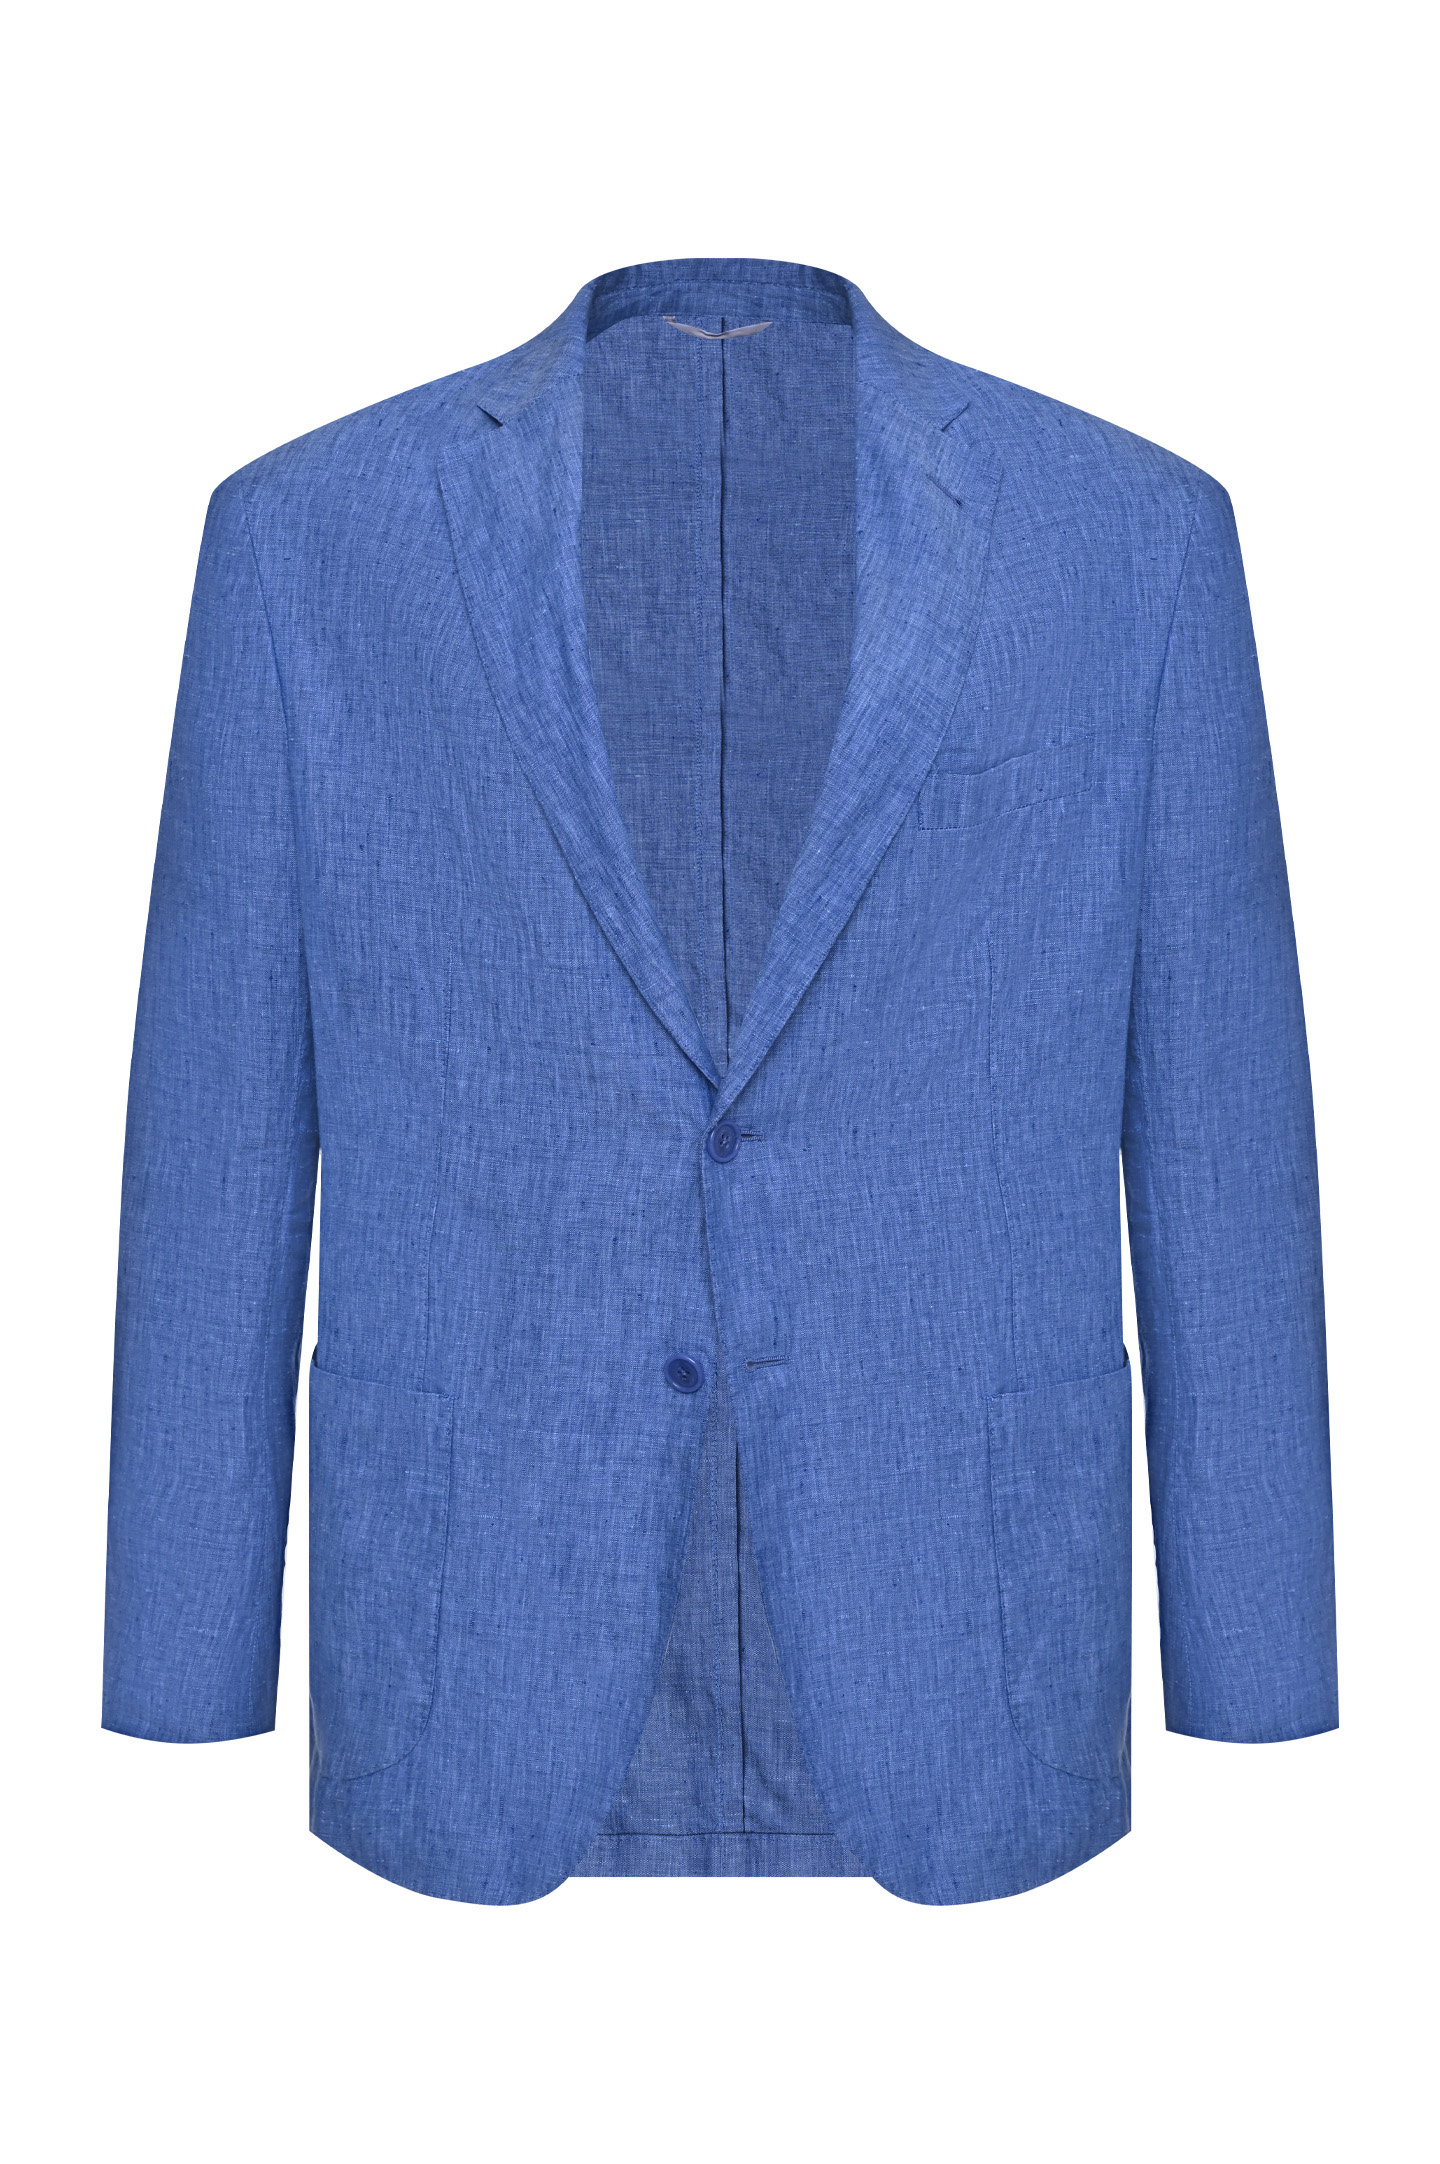 Пиджак DORIANI CASHMERE C138/269LAV-7-S, цвет: Голубой, Мужской